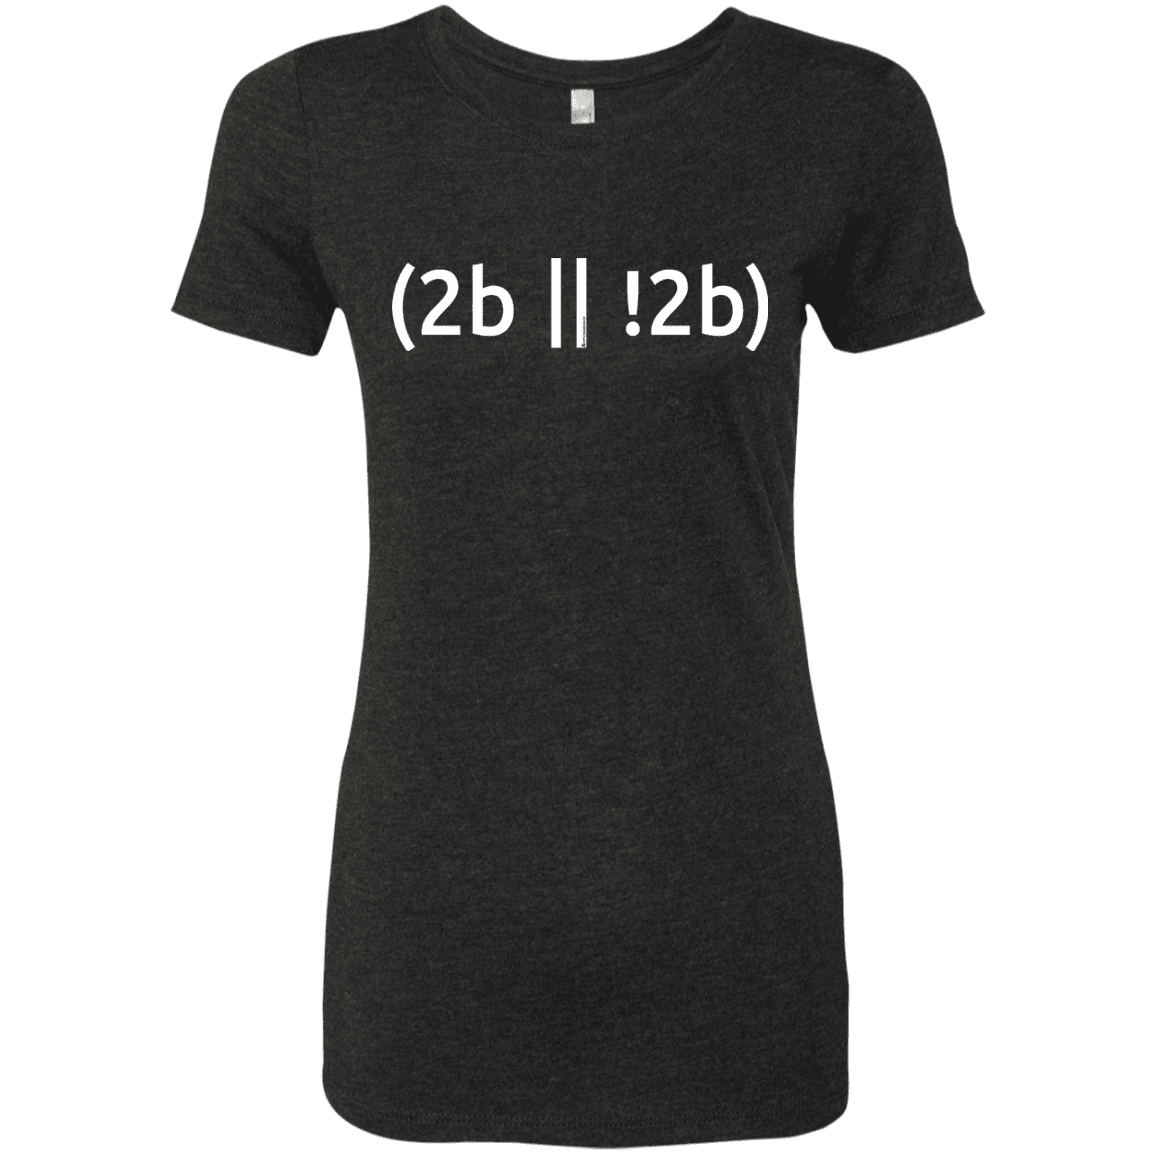 T-Shirts Vintage Black / Small 2b Or Not 2b Women's Triblend T-Shirt